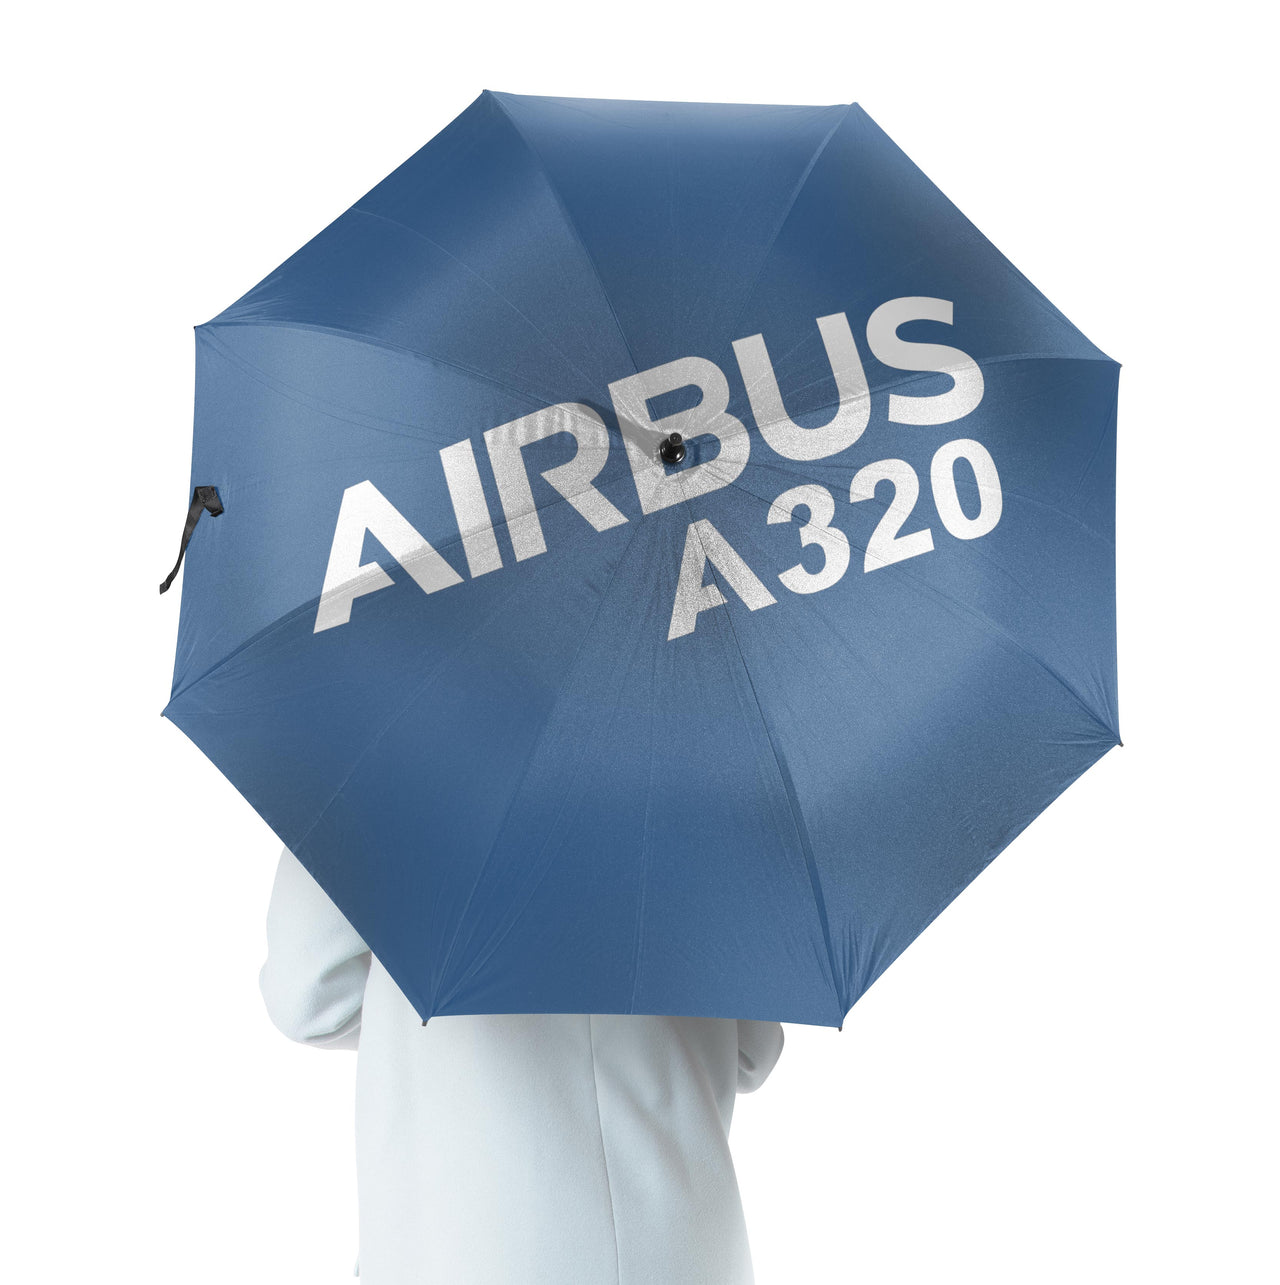 Airbus A320 & Text Designed Umbrella